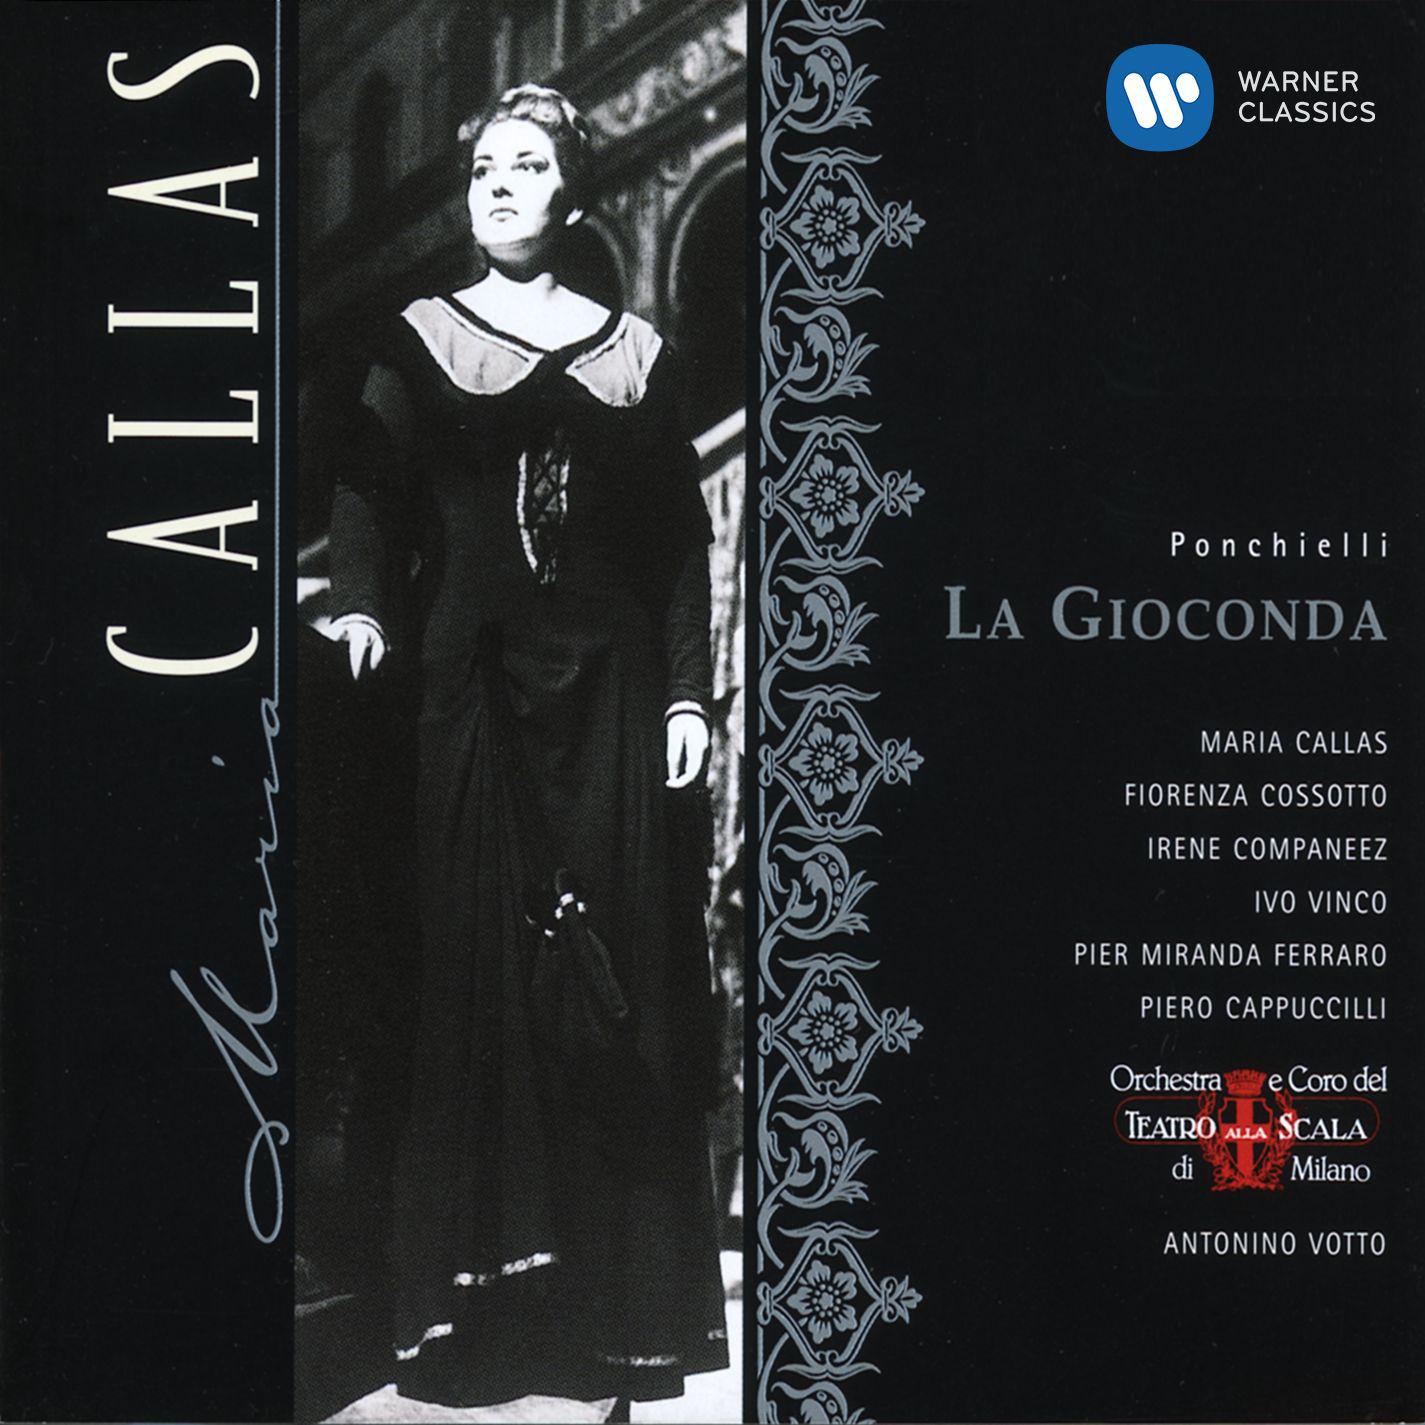 Antonino Votto - La Gioconda (1997 Remastered Version), Act II:E un anatema!